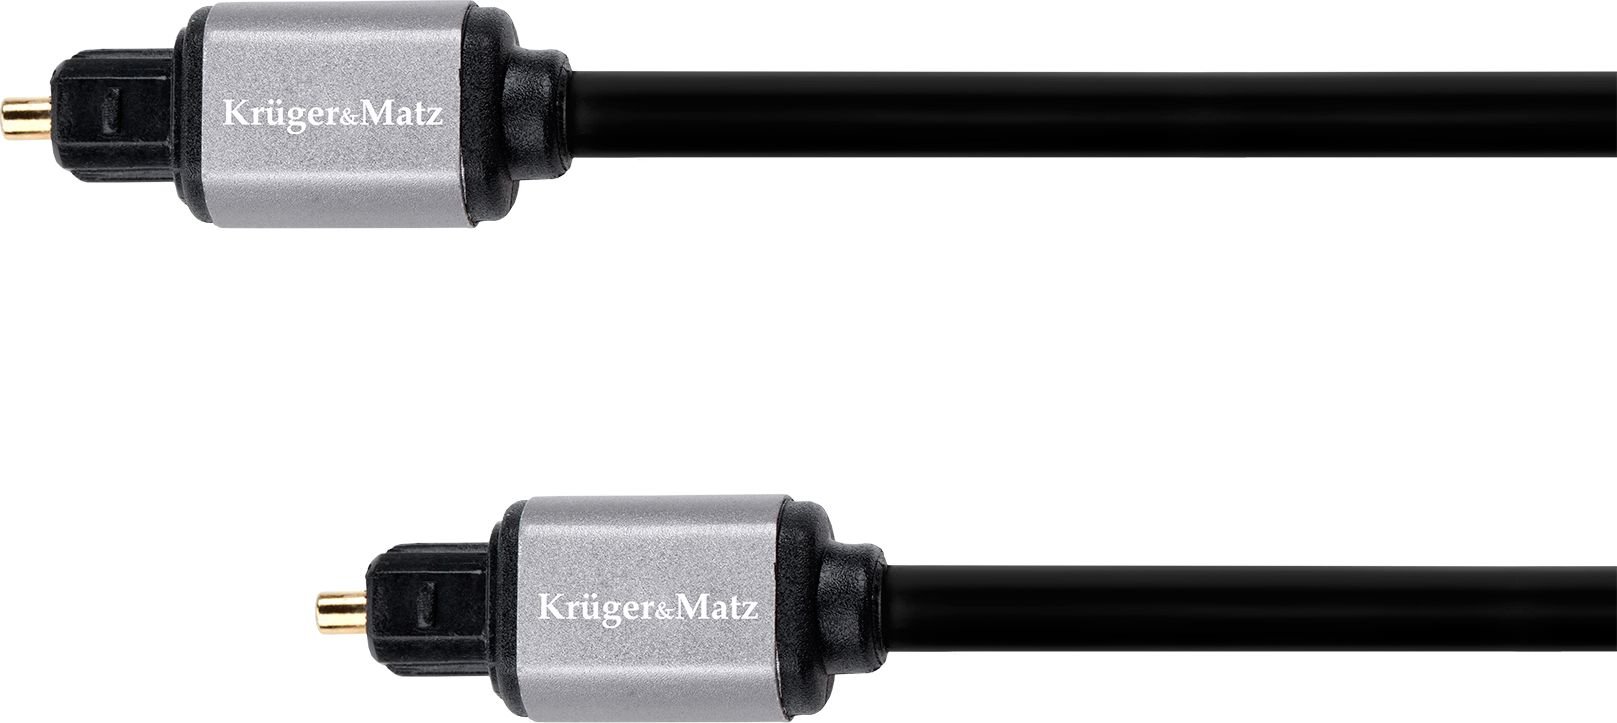 Cablu optic 3 m Kruger&Matz Basic